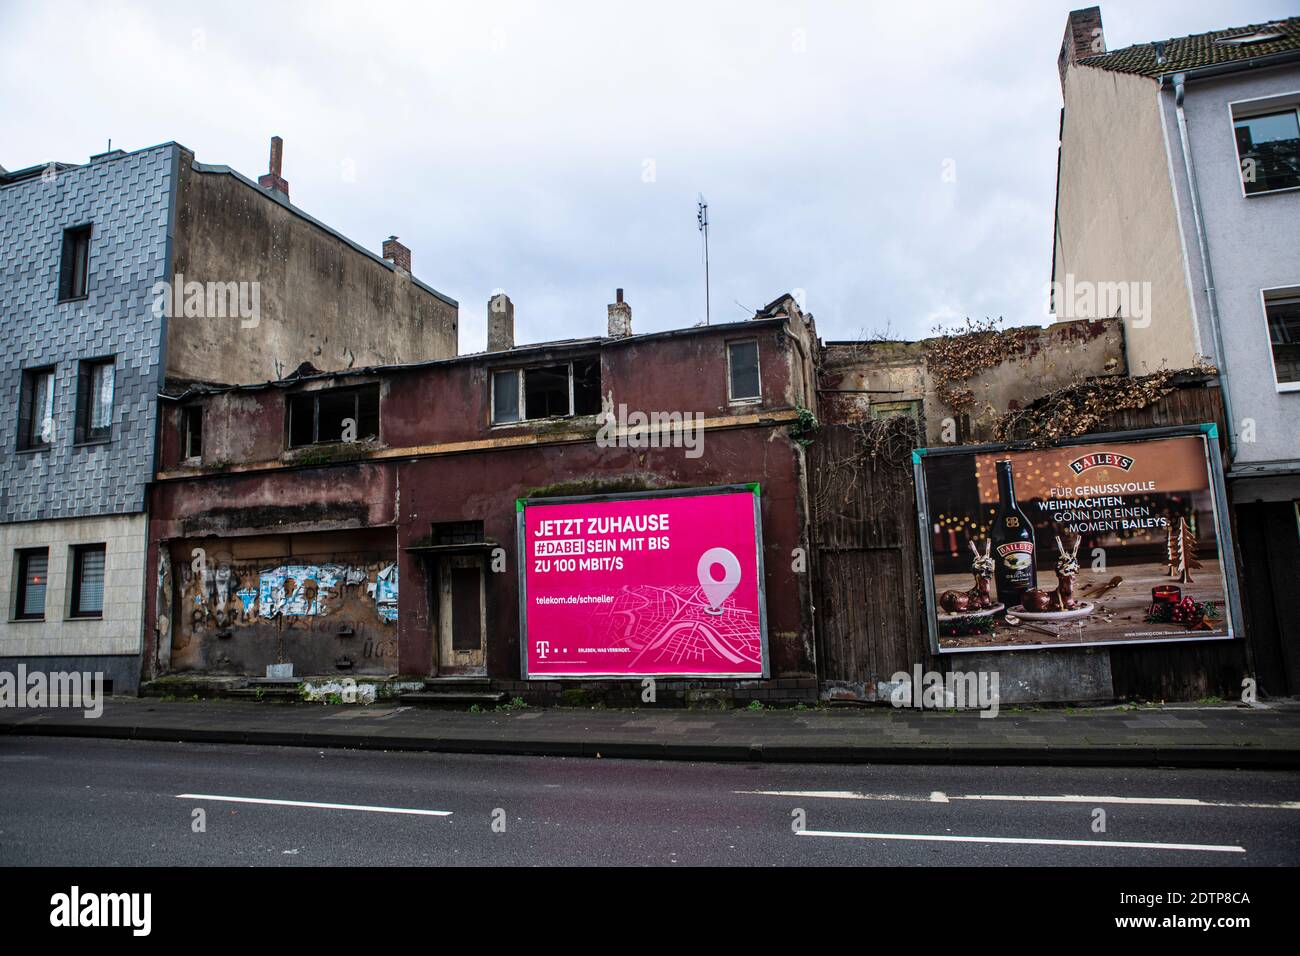 Reklame un Trümmerhäusern en Duisburg. Die Telekom wirbt mit 'jetzt zuhause', wo kein zu hause mehr ist. Foto de stock